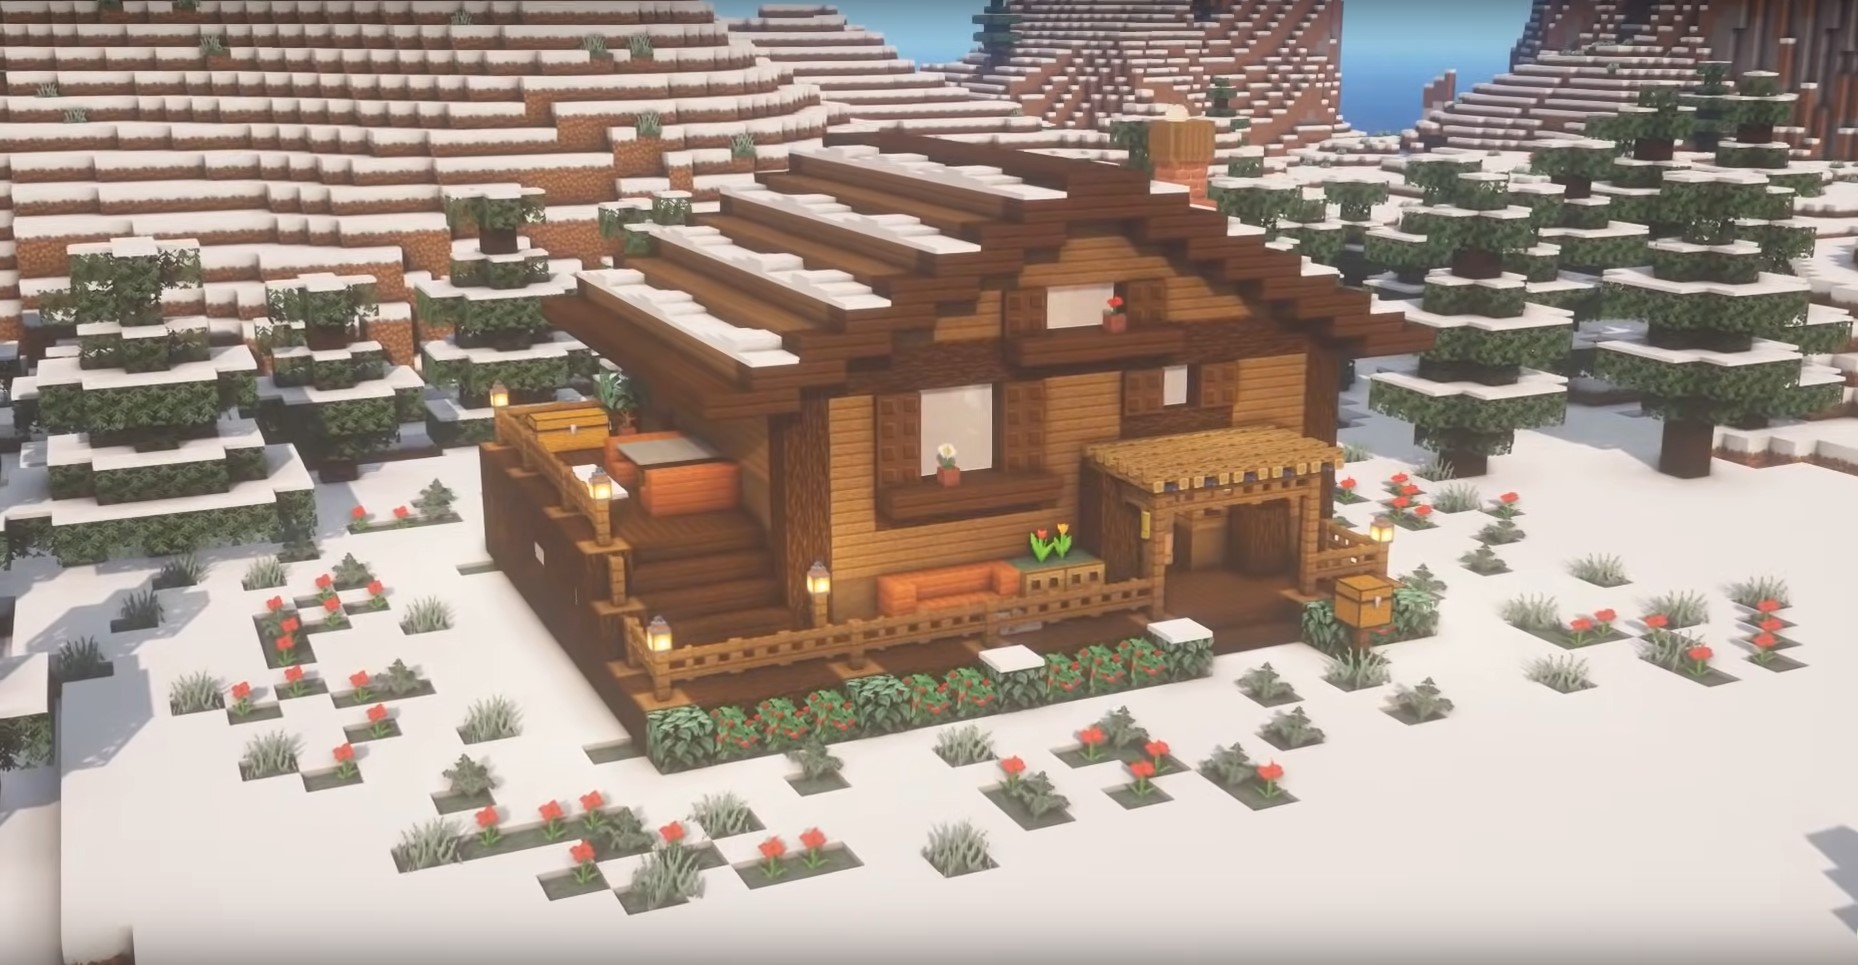 Winter Cabin House minecraft building idea